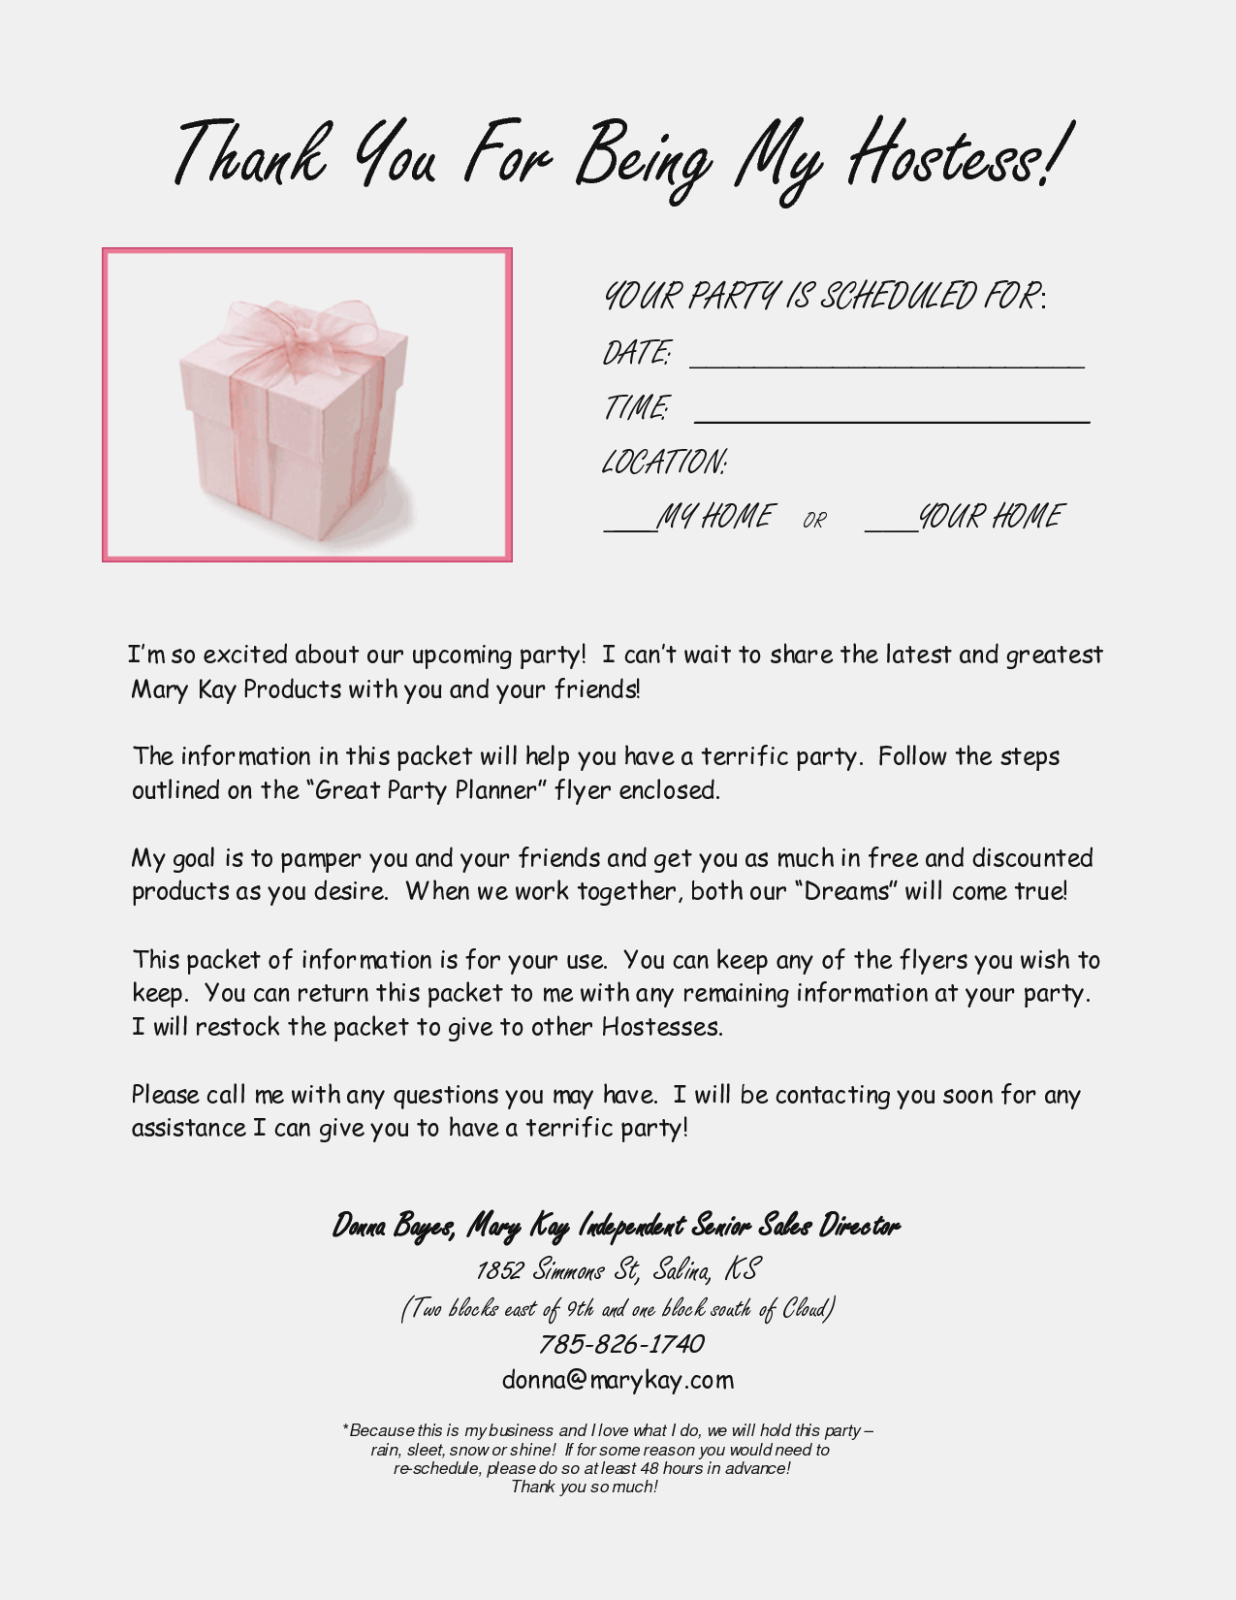 Mary Kay Hostess Invitations | Mary Kay Order Form | Mary Kay Ideas - Mary Kay Invites Printable Free